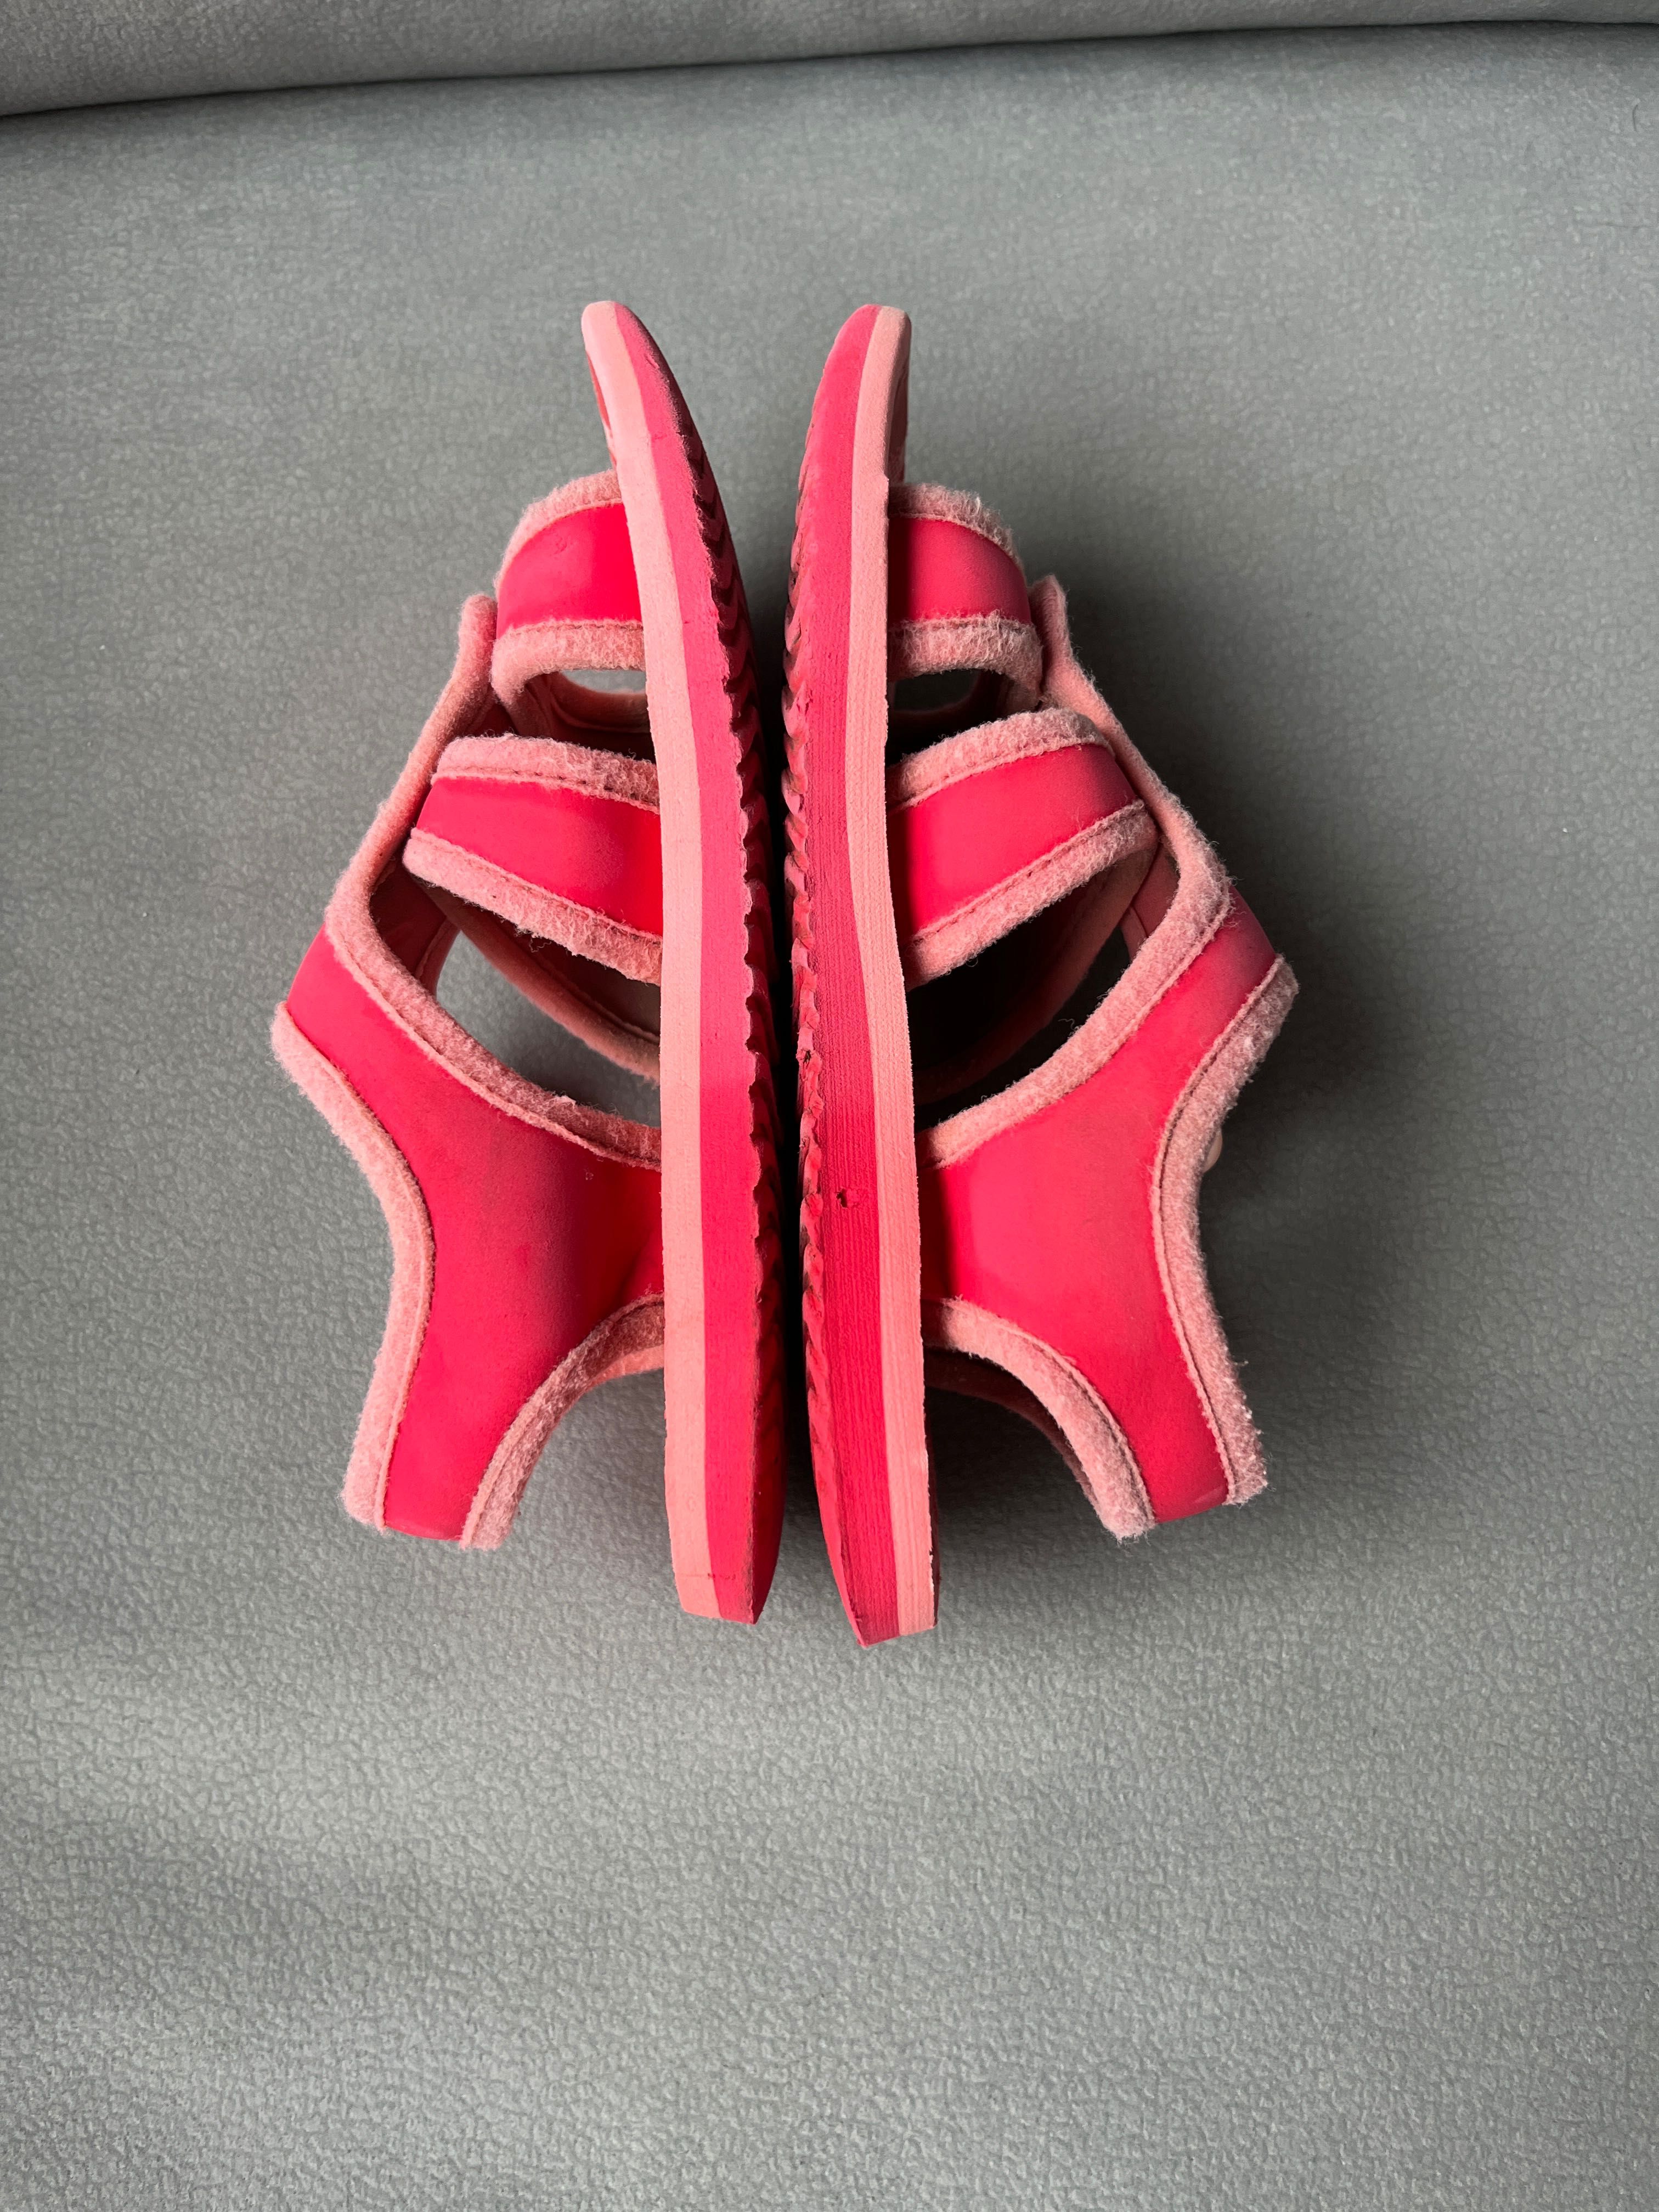 Różowe sandały PUMA sandałki dziewczęce z zapięciem na rzep 29-30